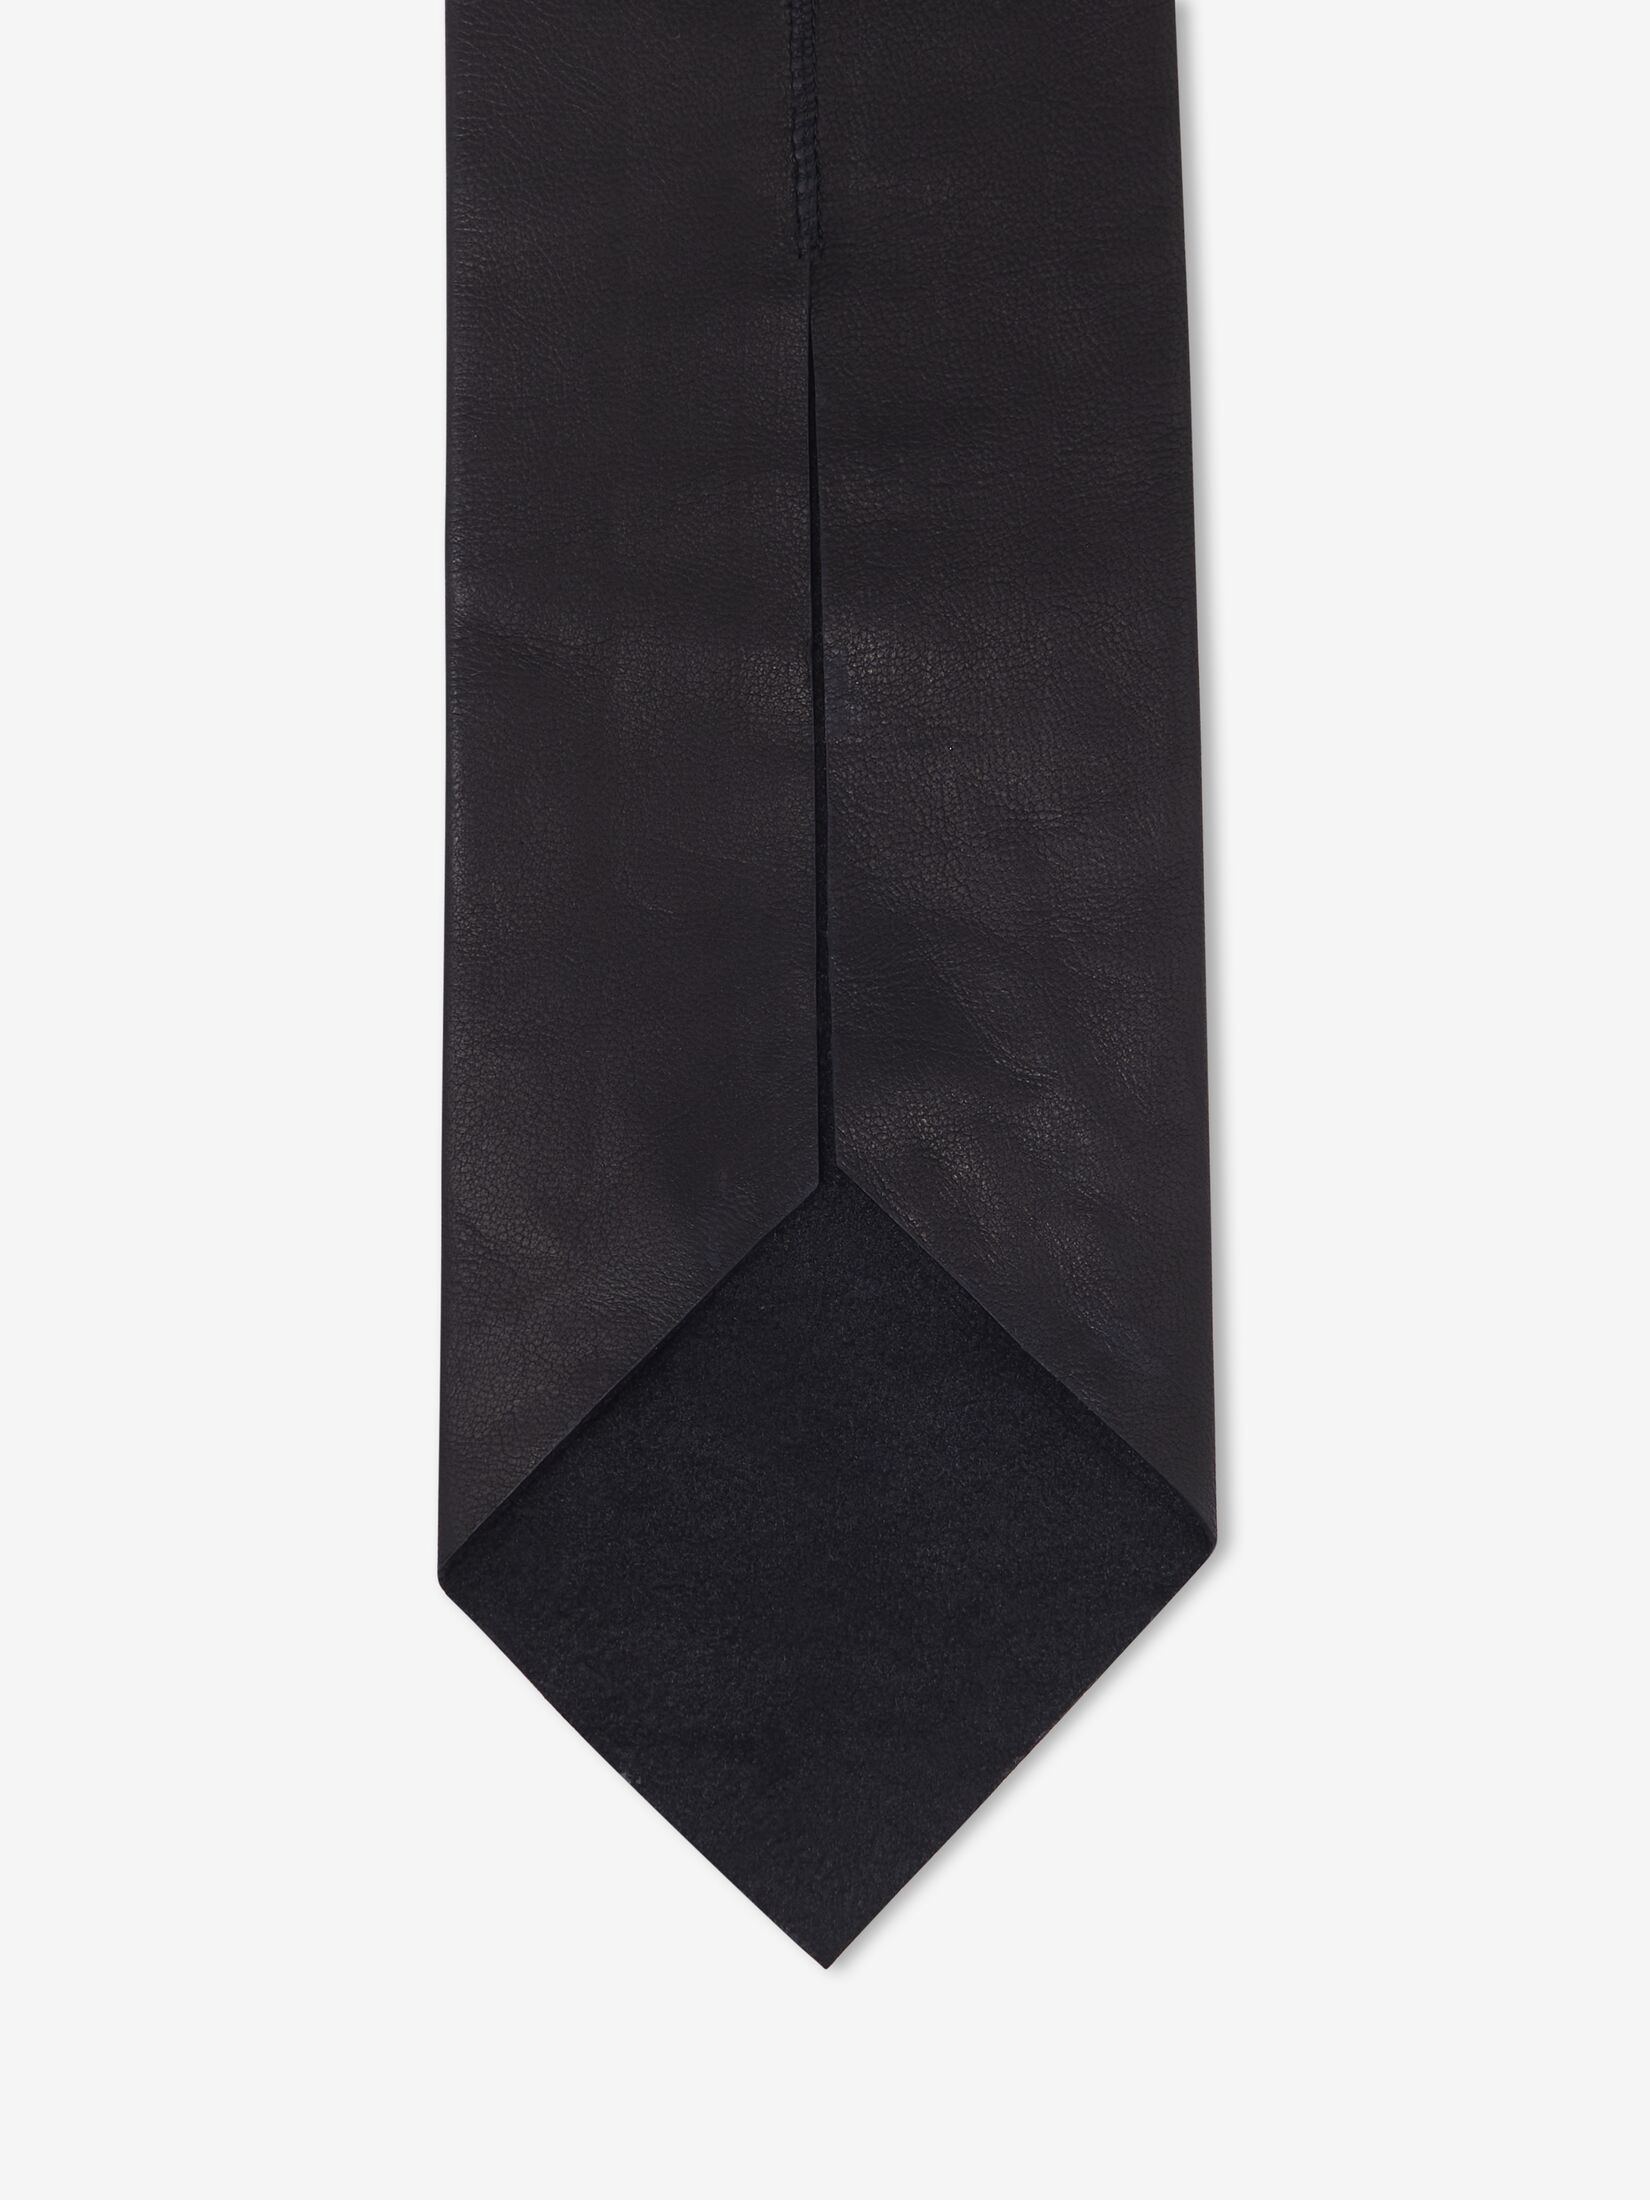 Women's Leather Tie in Black - 3